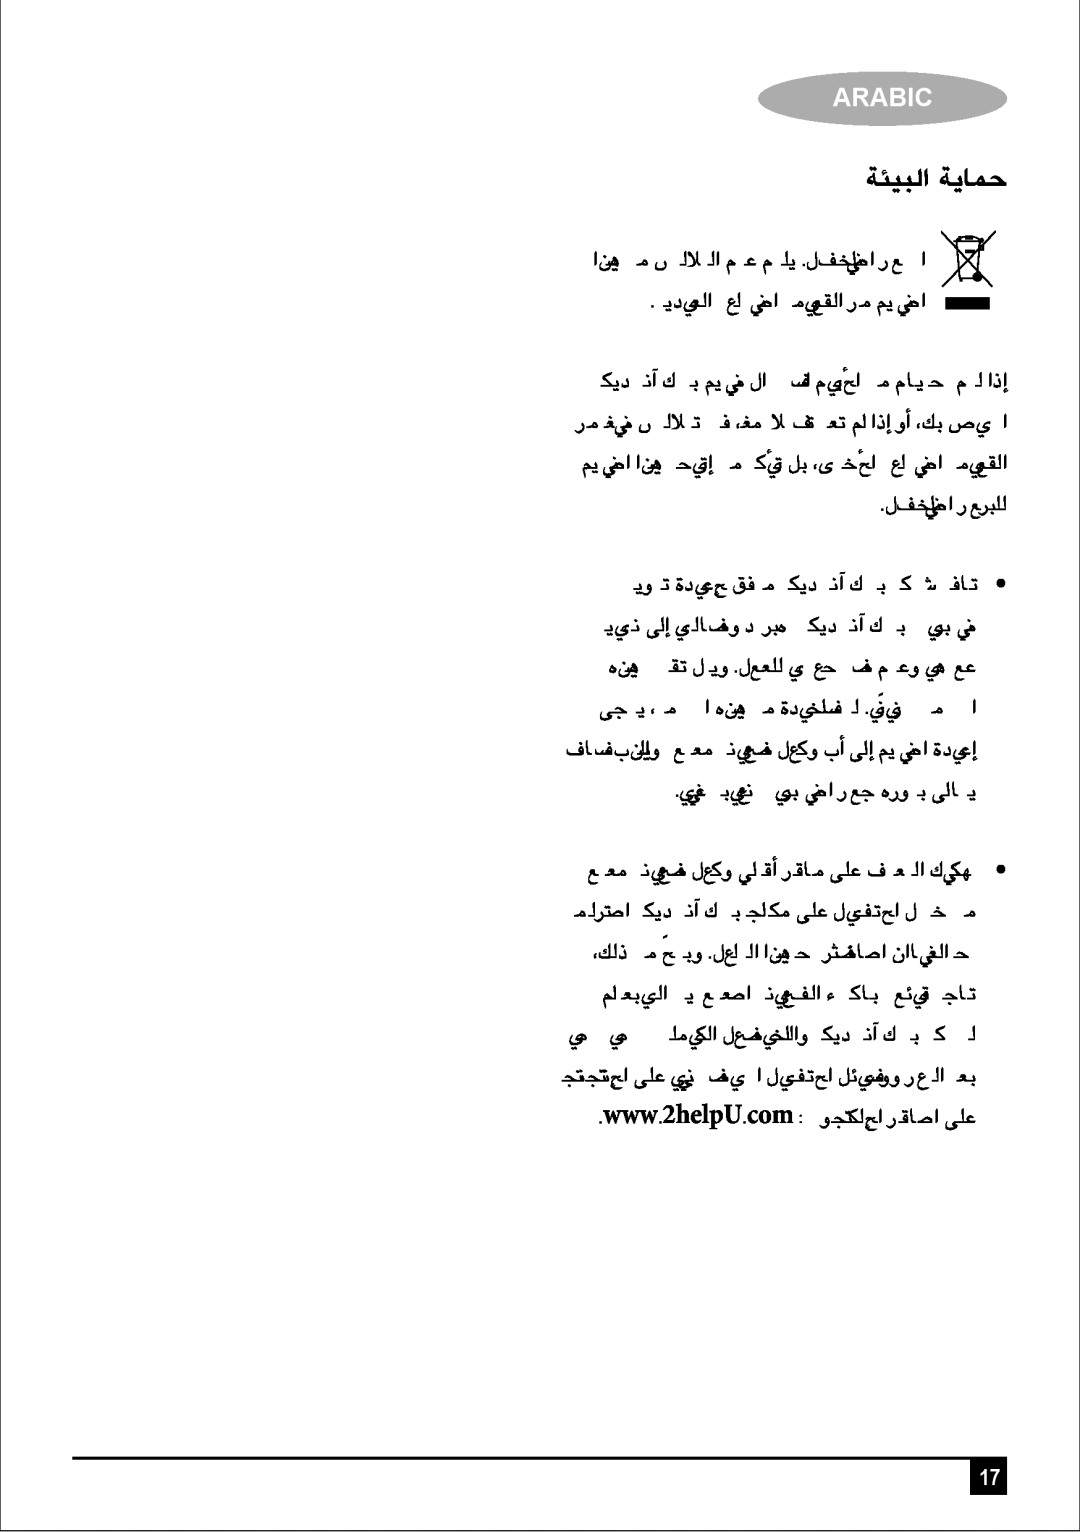 Black & Decker JE400 manual áÄ«ÑdG ájÉªM, πüØæŸG ªé∏d, Arabic 